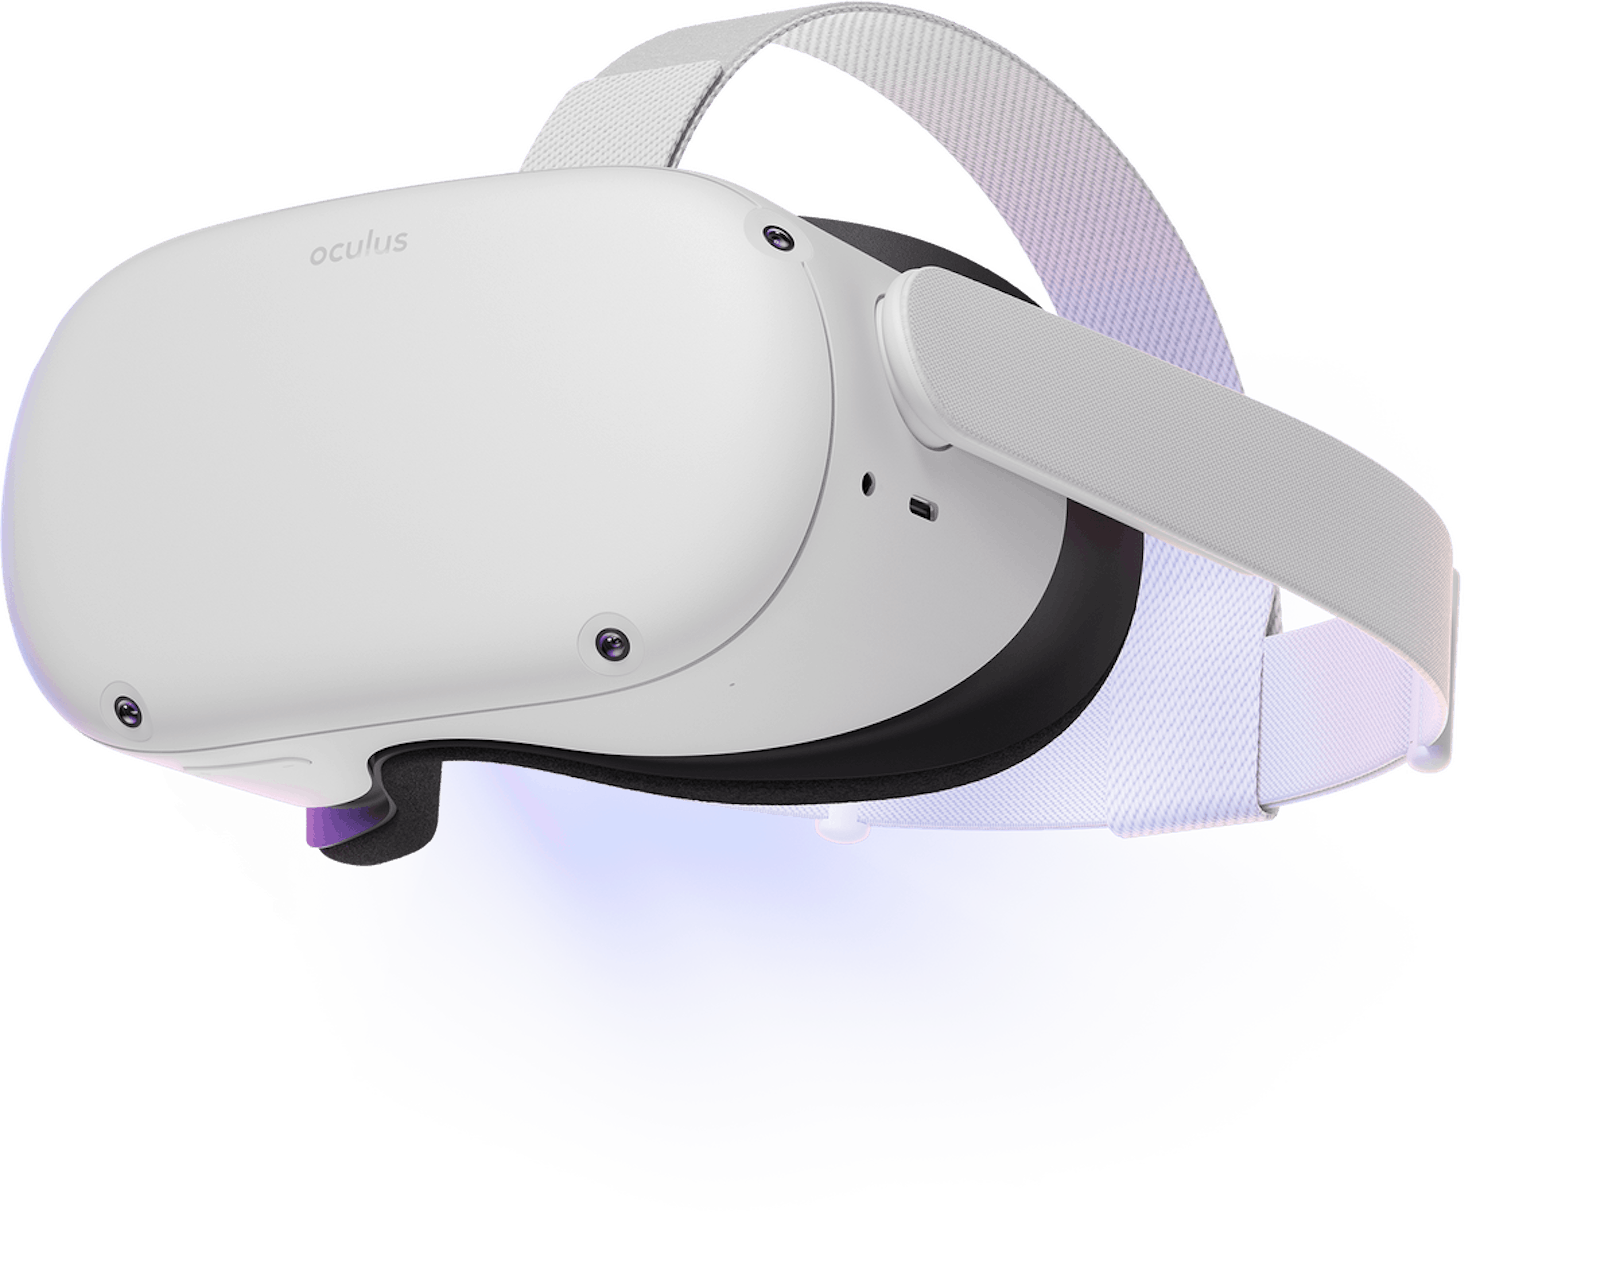 Die Oculus Quest 2 kam im Oktober 2020 auf den Markt.